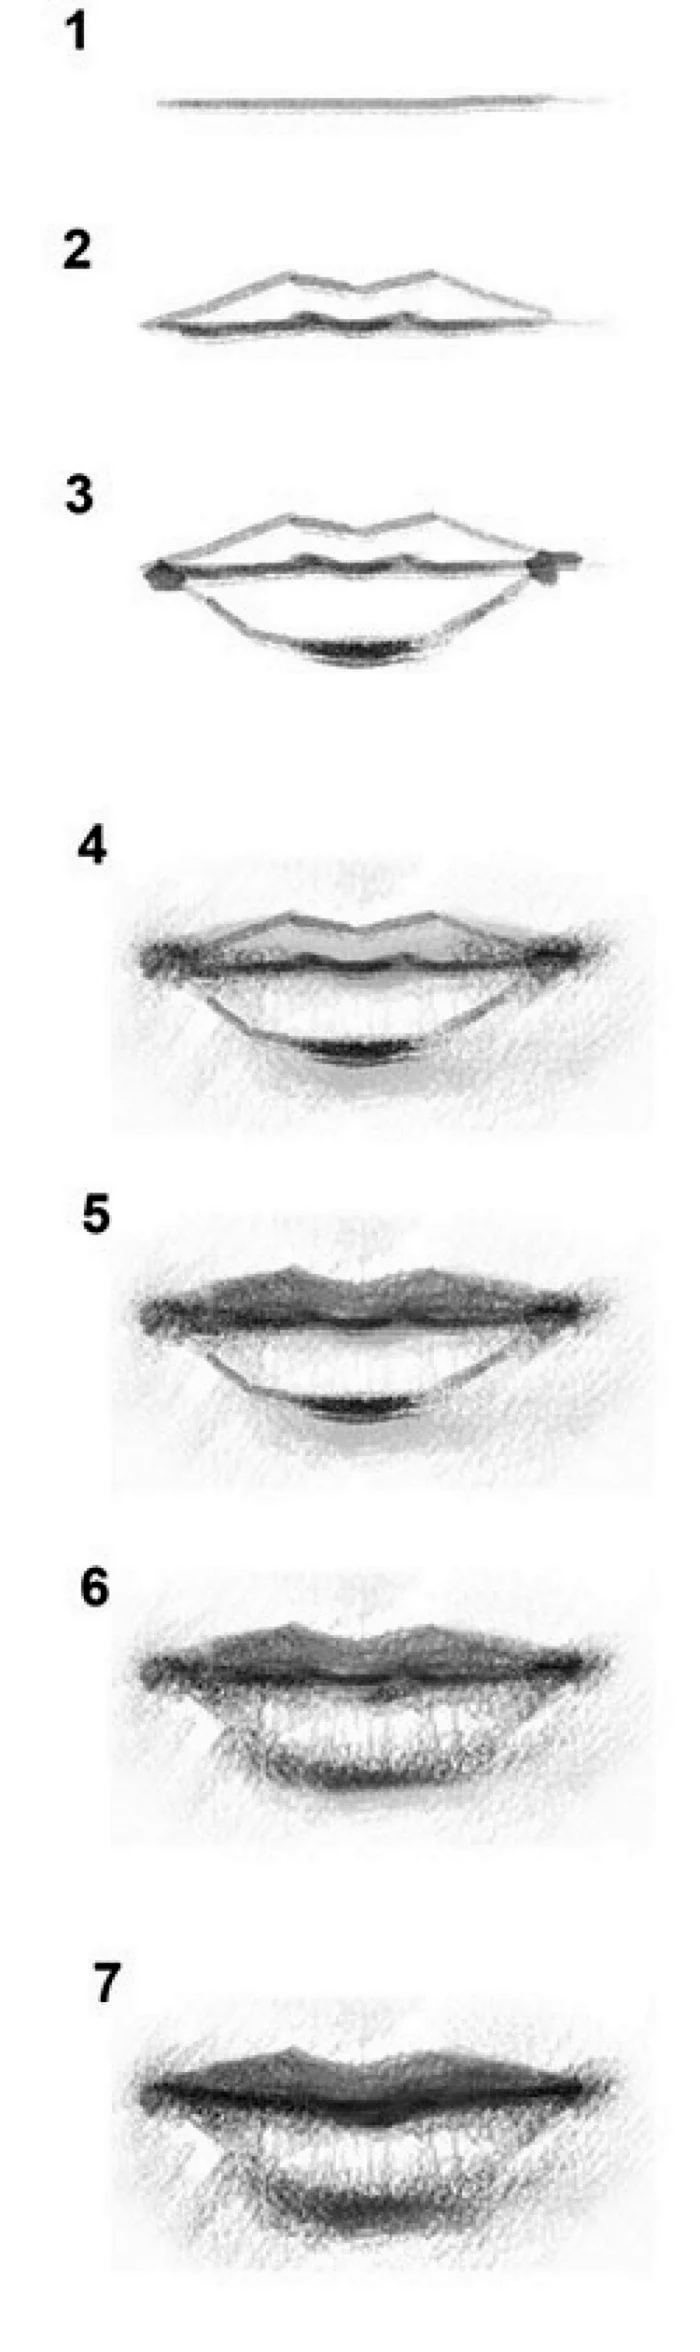 Поэтапное рисование губ